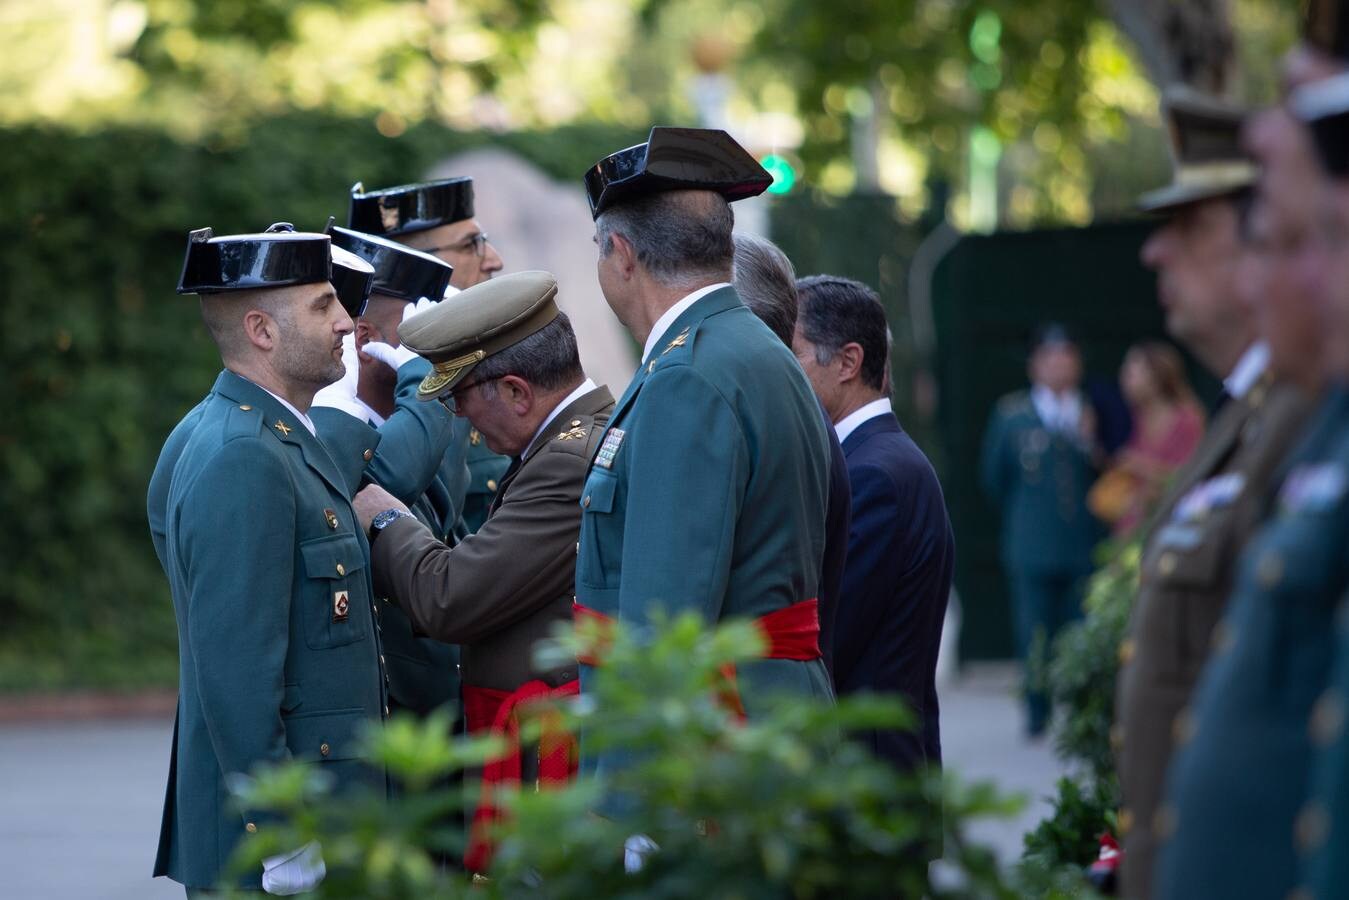 La Guardia Civil celebra su 175º aniversario en Sevilla